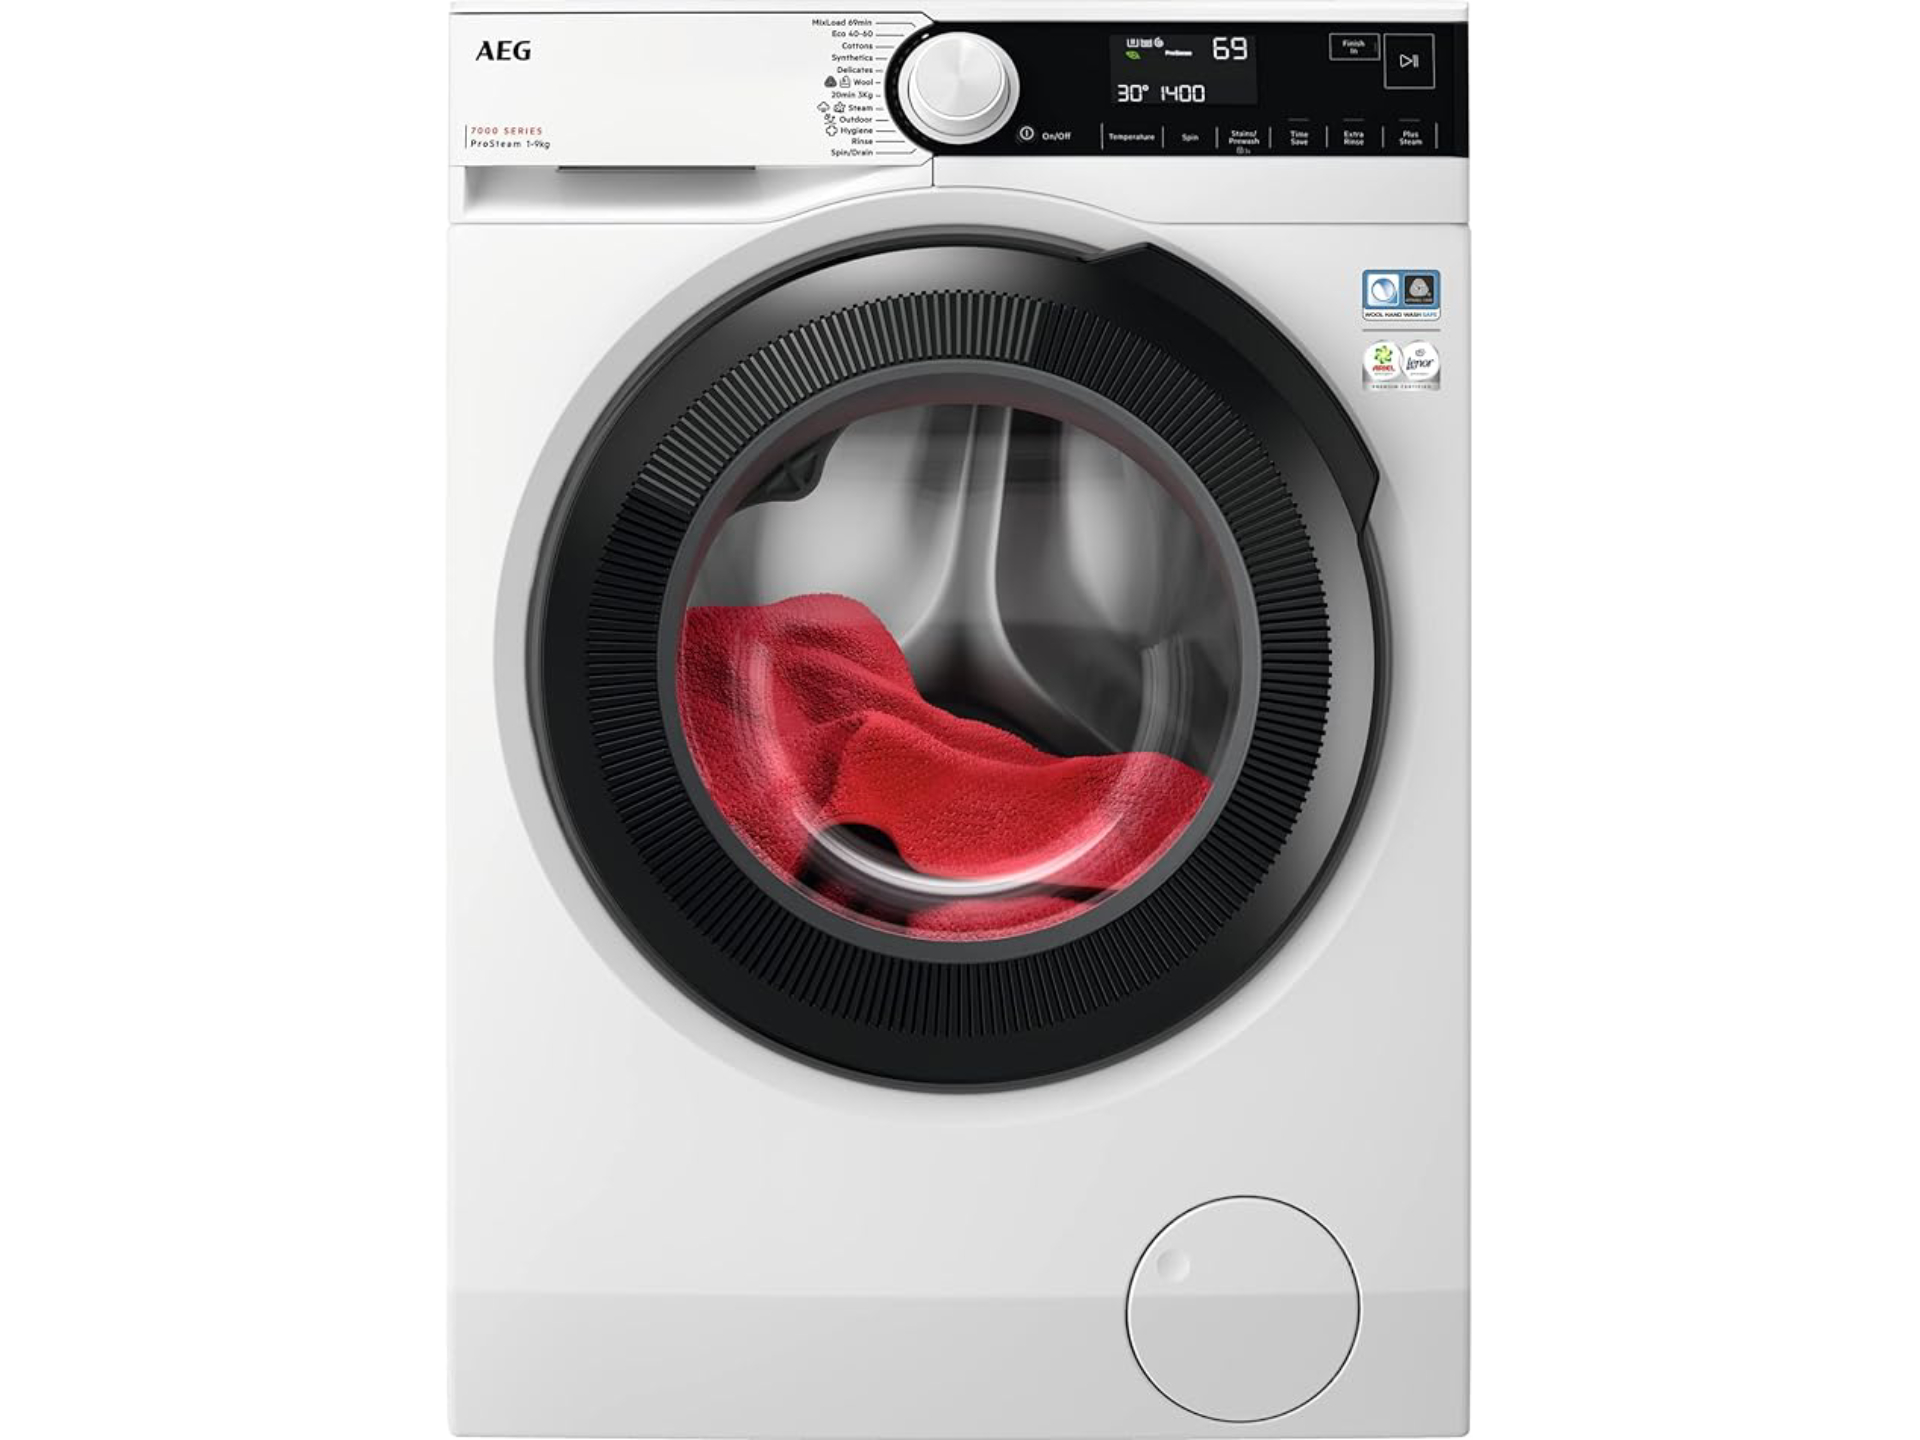 Auf die AEG 700 Waschmaschine gibt es bei Amazon satte 44 % Rabatt